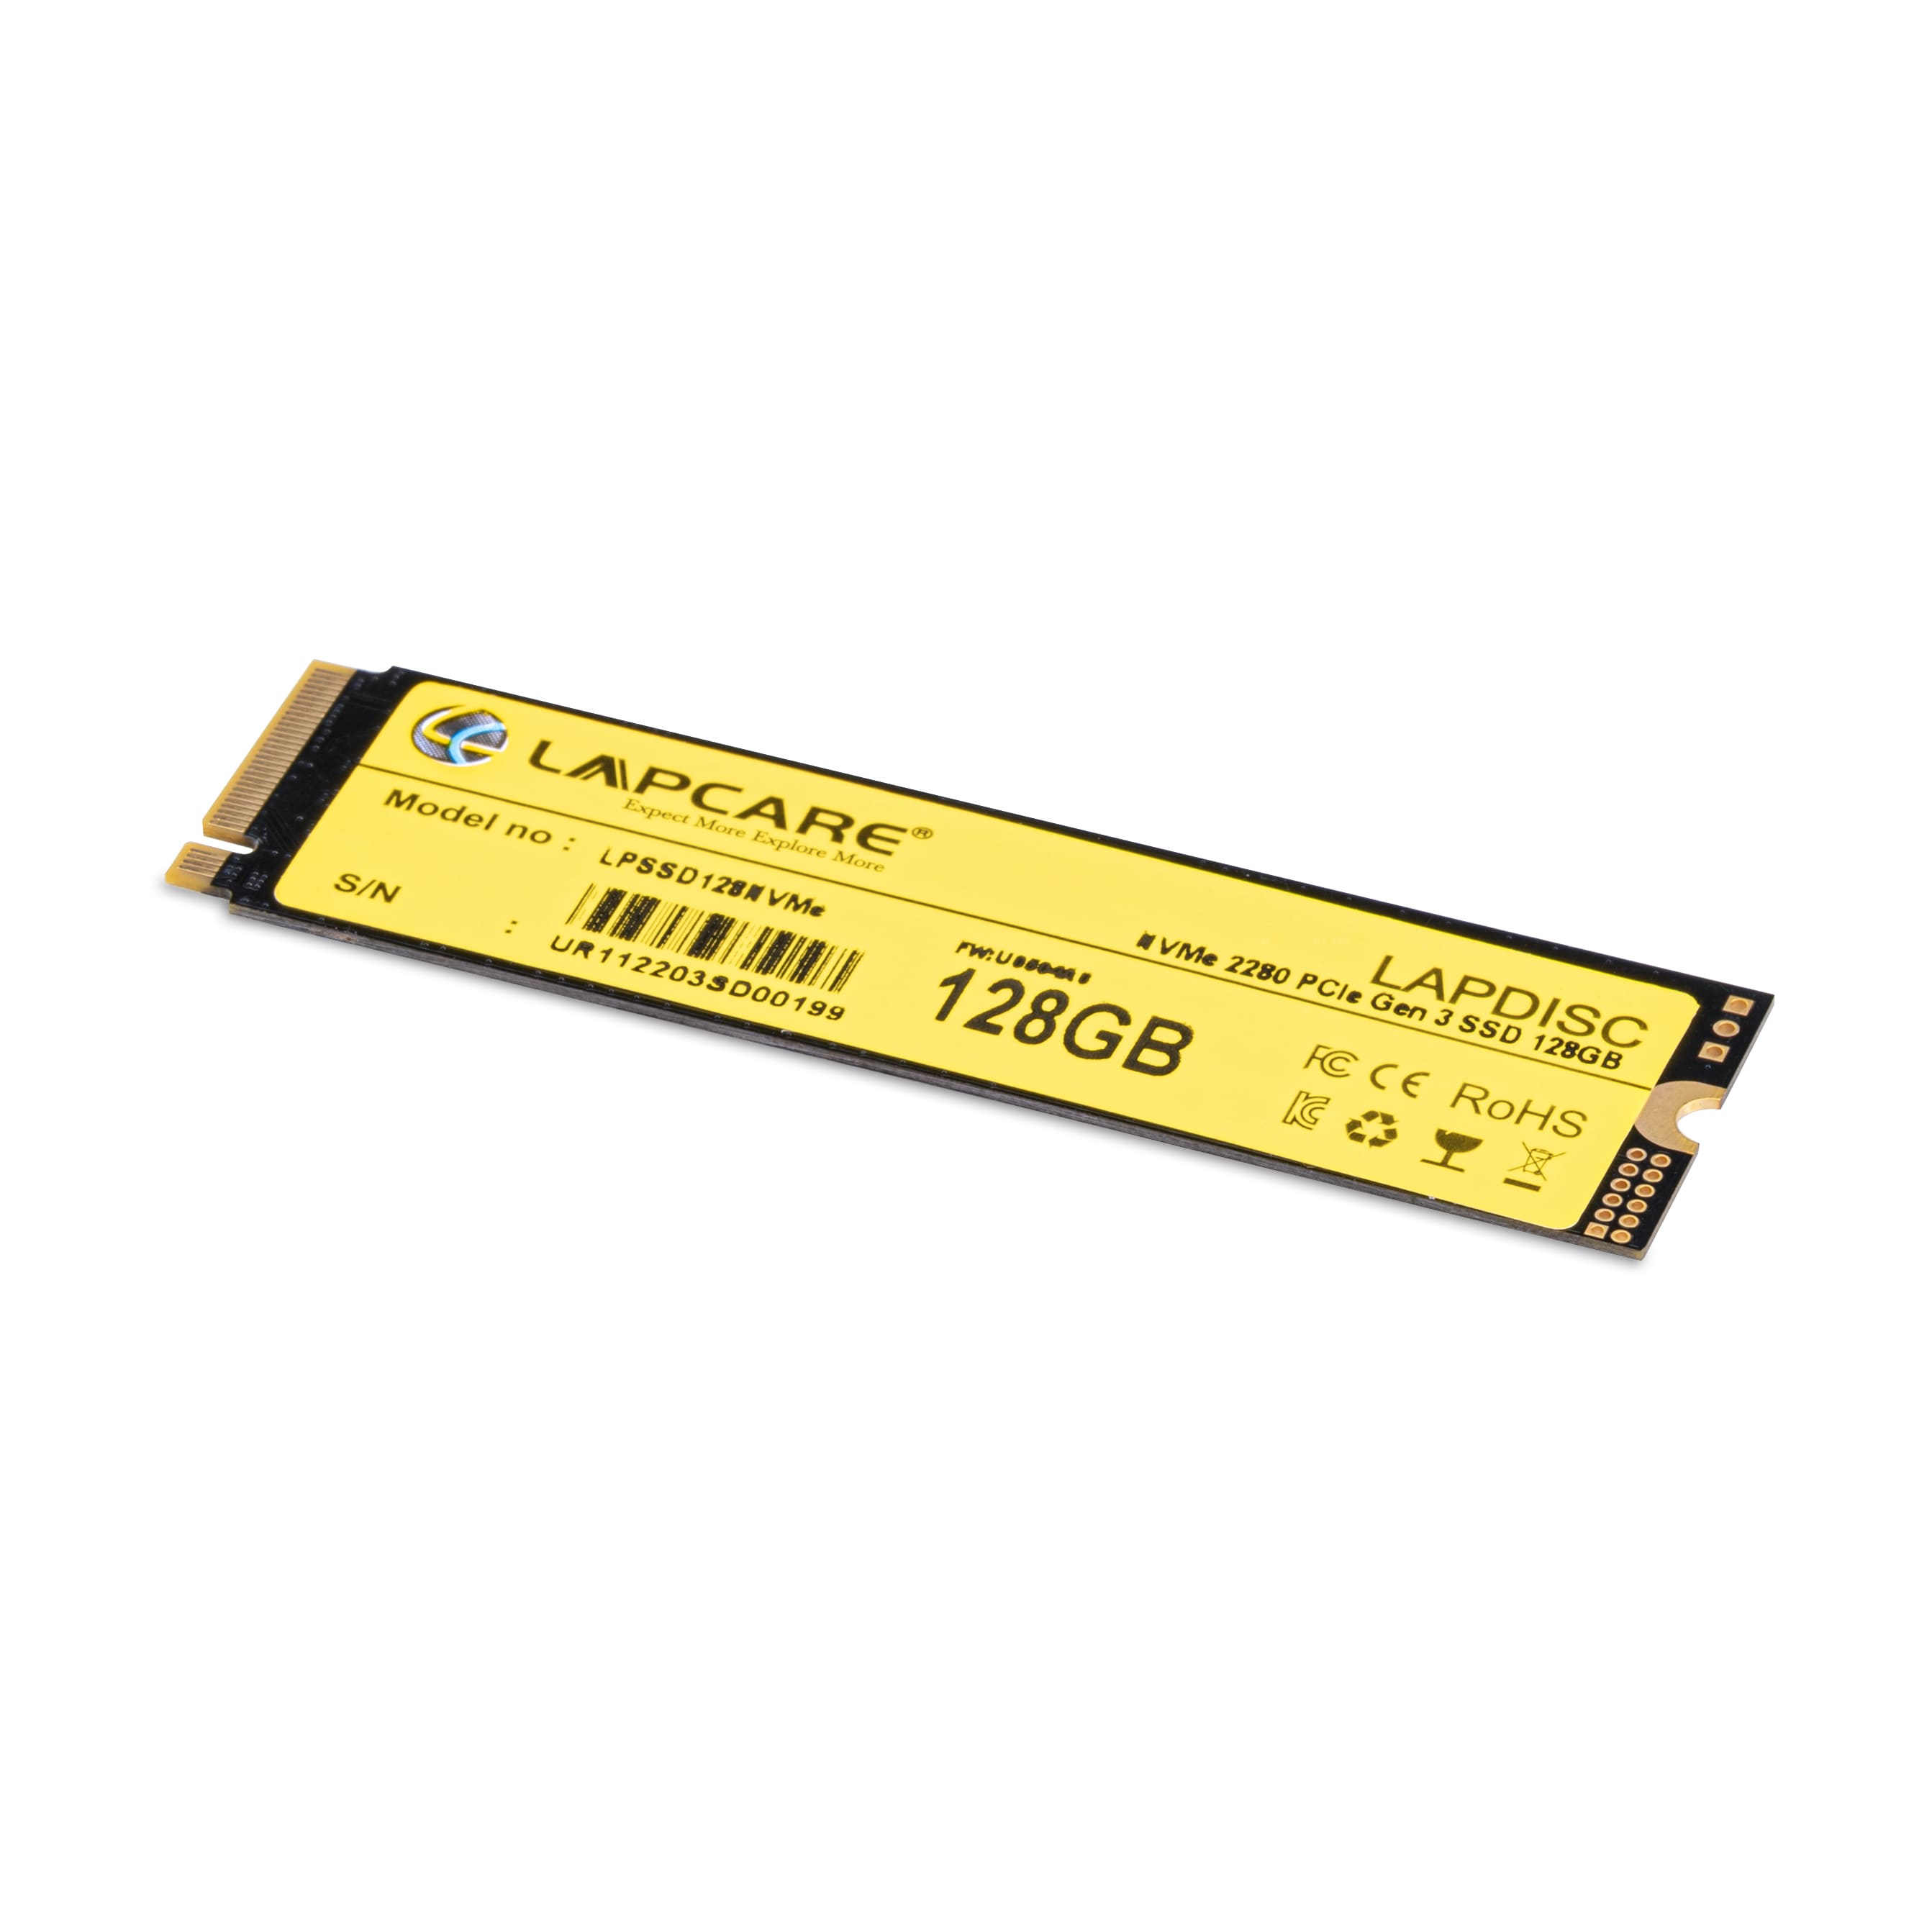 Lapcare LAPDISC NVMe 2280 PCIe Gen 3 SSD 128GB